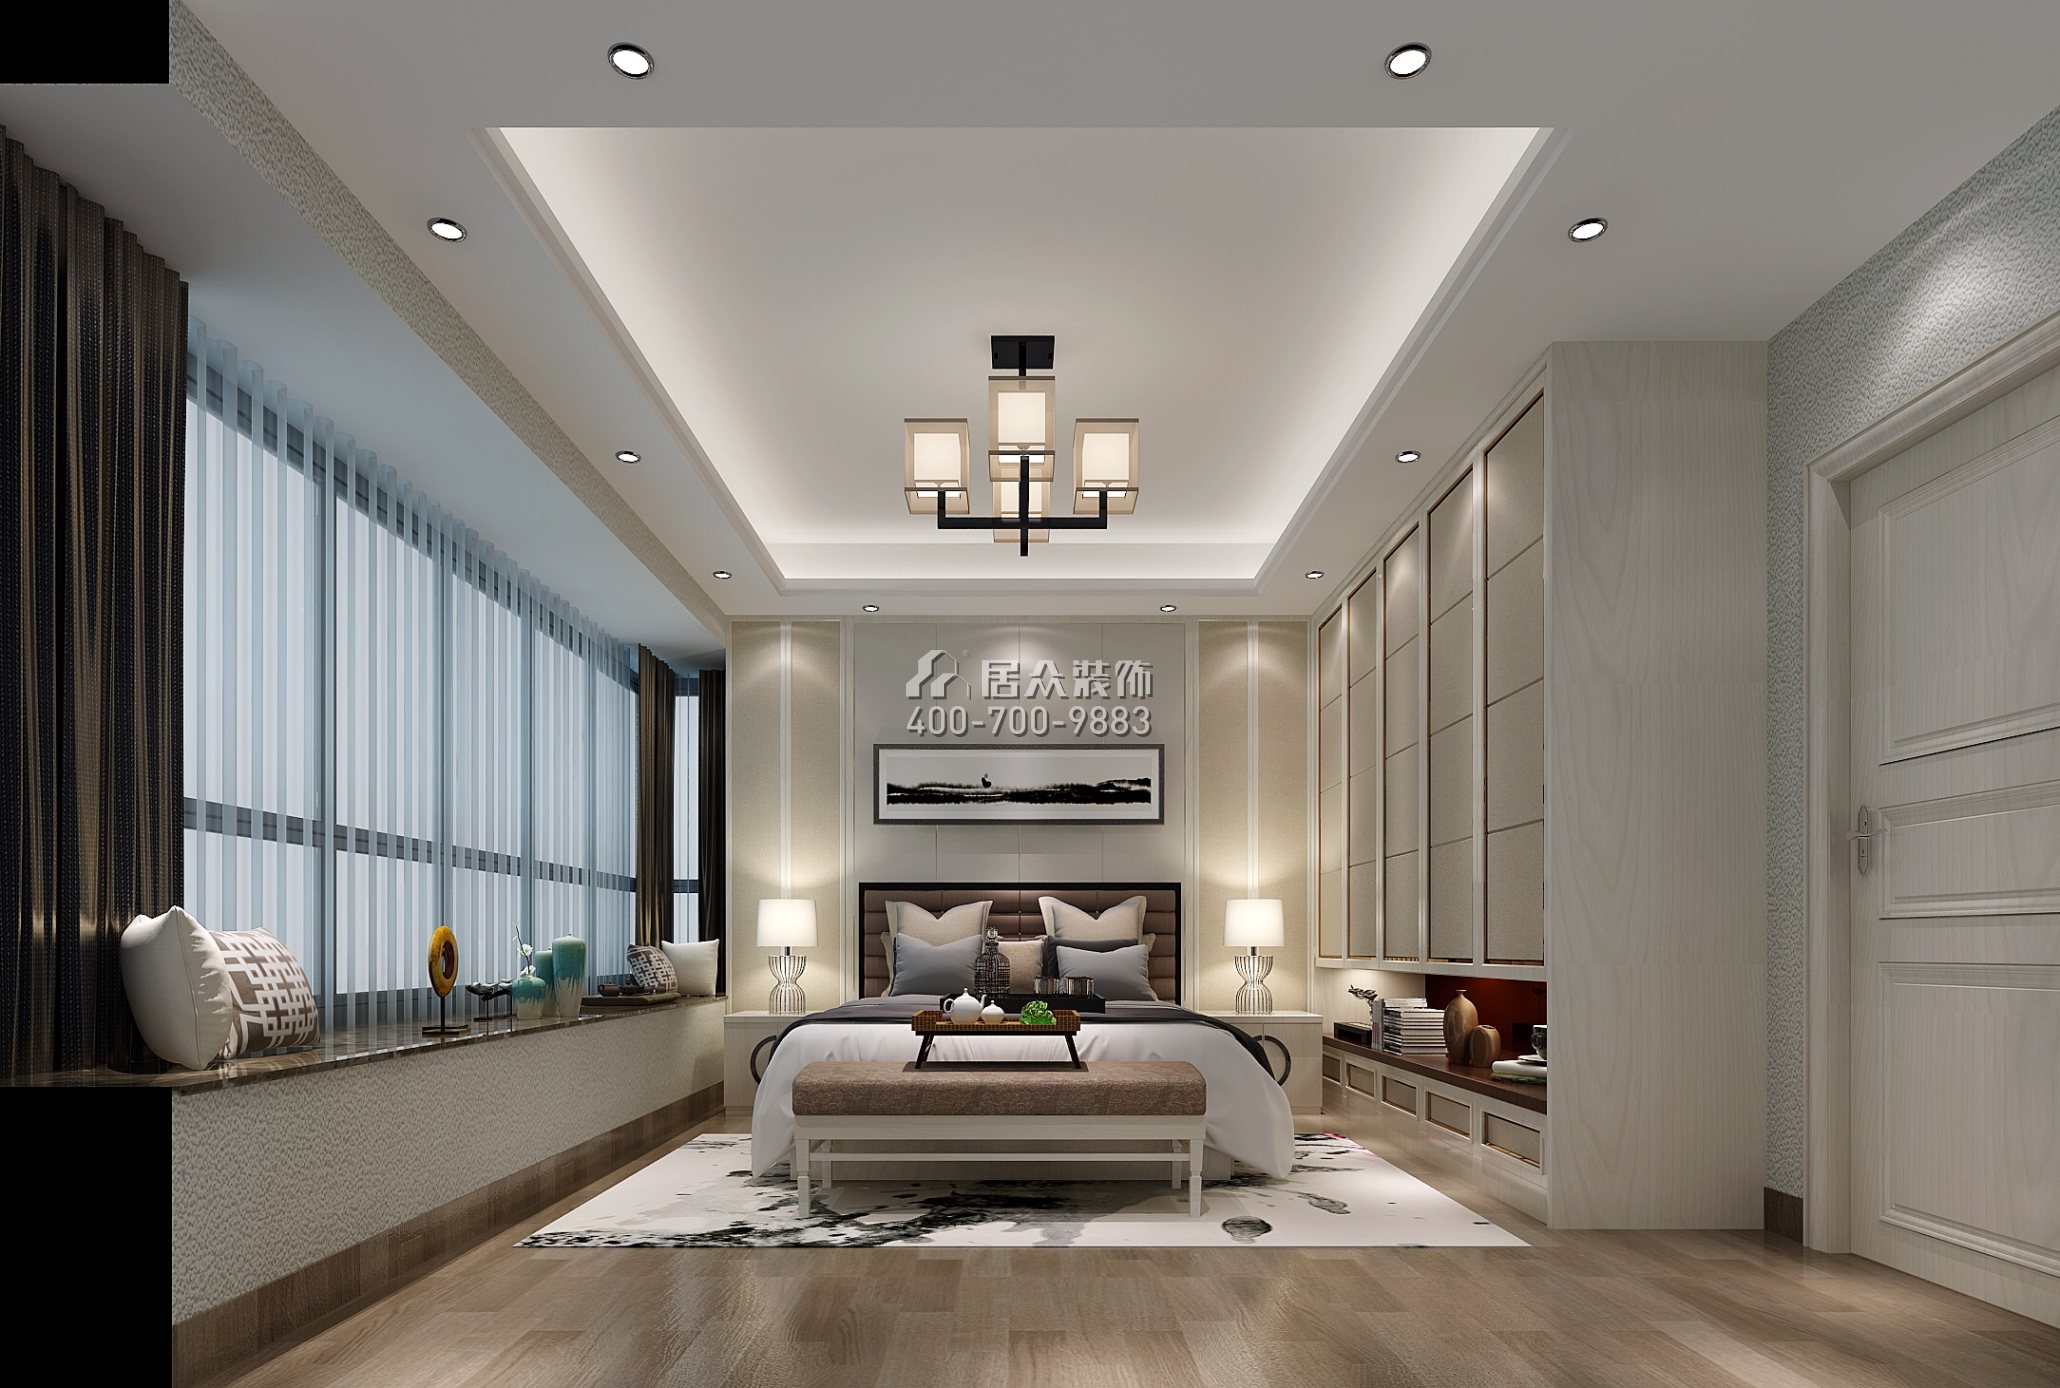 嘉都汇120平方米新古典风格平层户型卧室kok电竞平台效果图